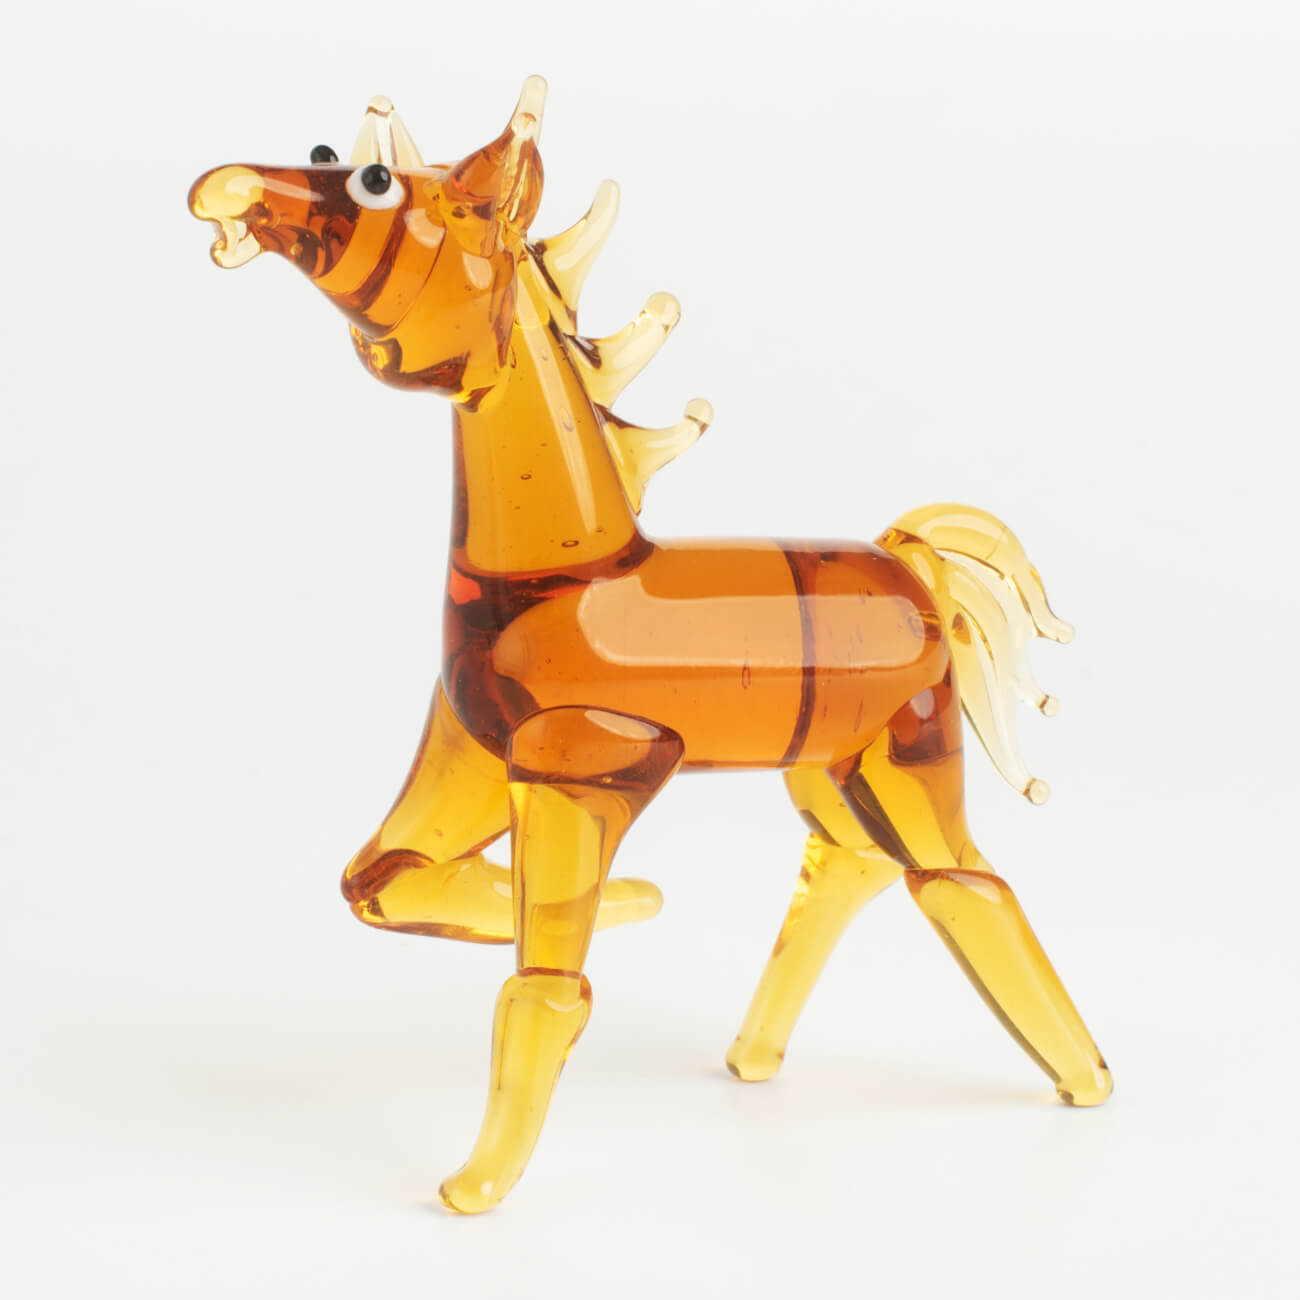 Статуэтка, 7 см, стекло, янтарная, Лошадь, Vitreous может ли лошадь решать уравнения и ещё 320 вопросов о животных